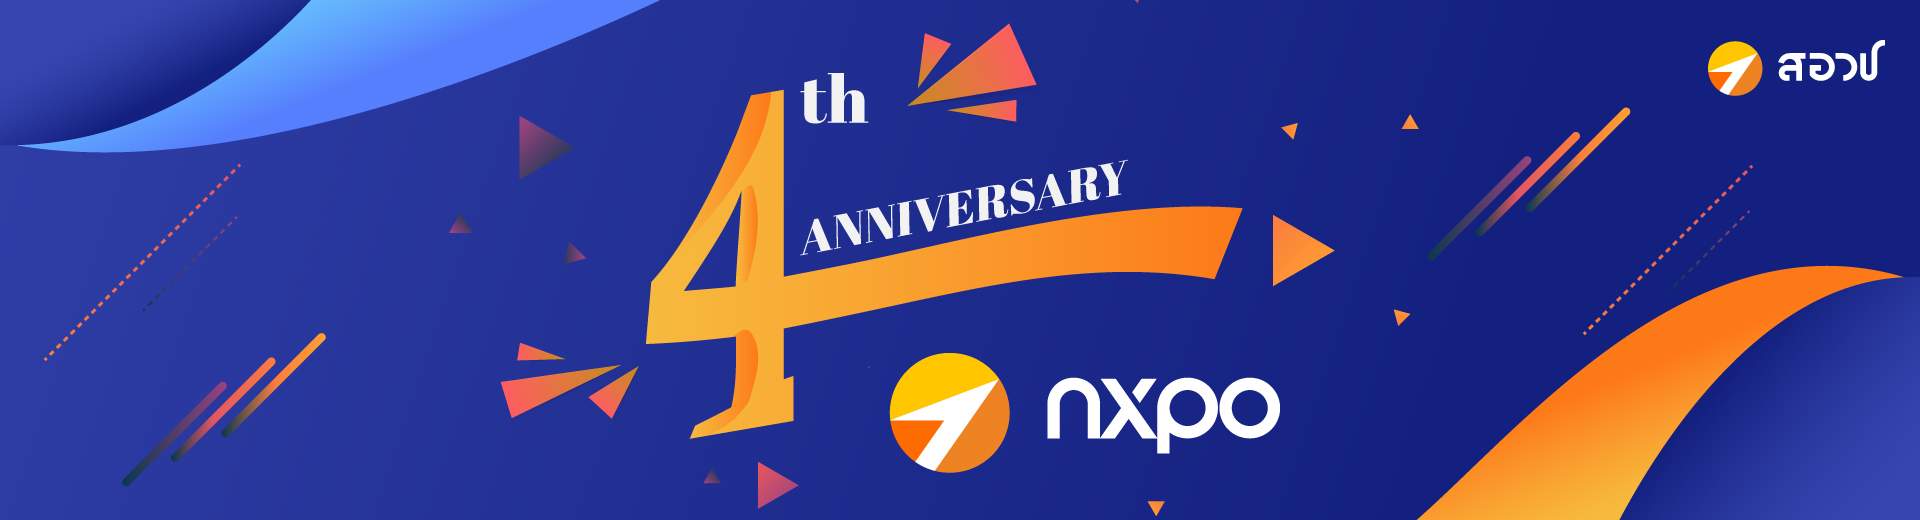 nxpo anniversary